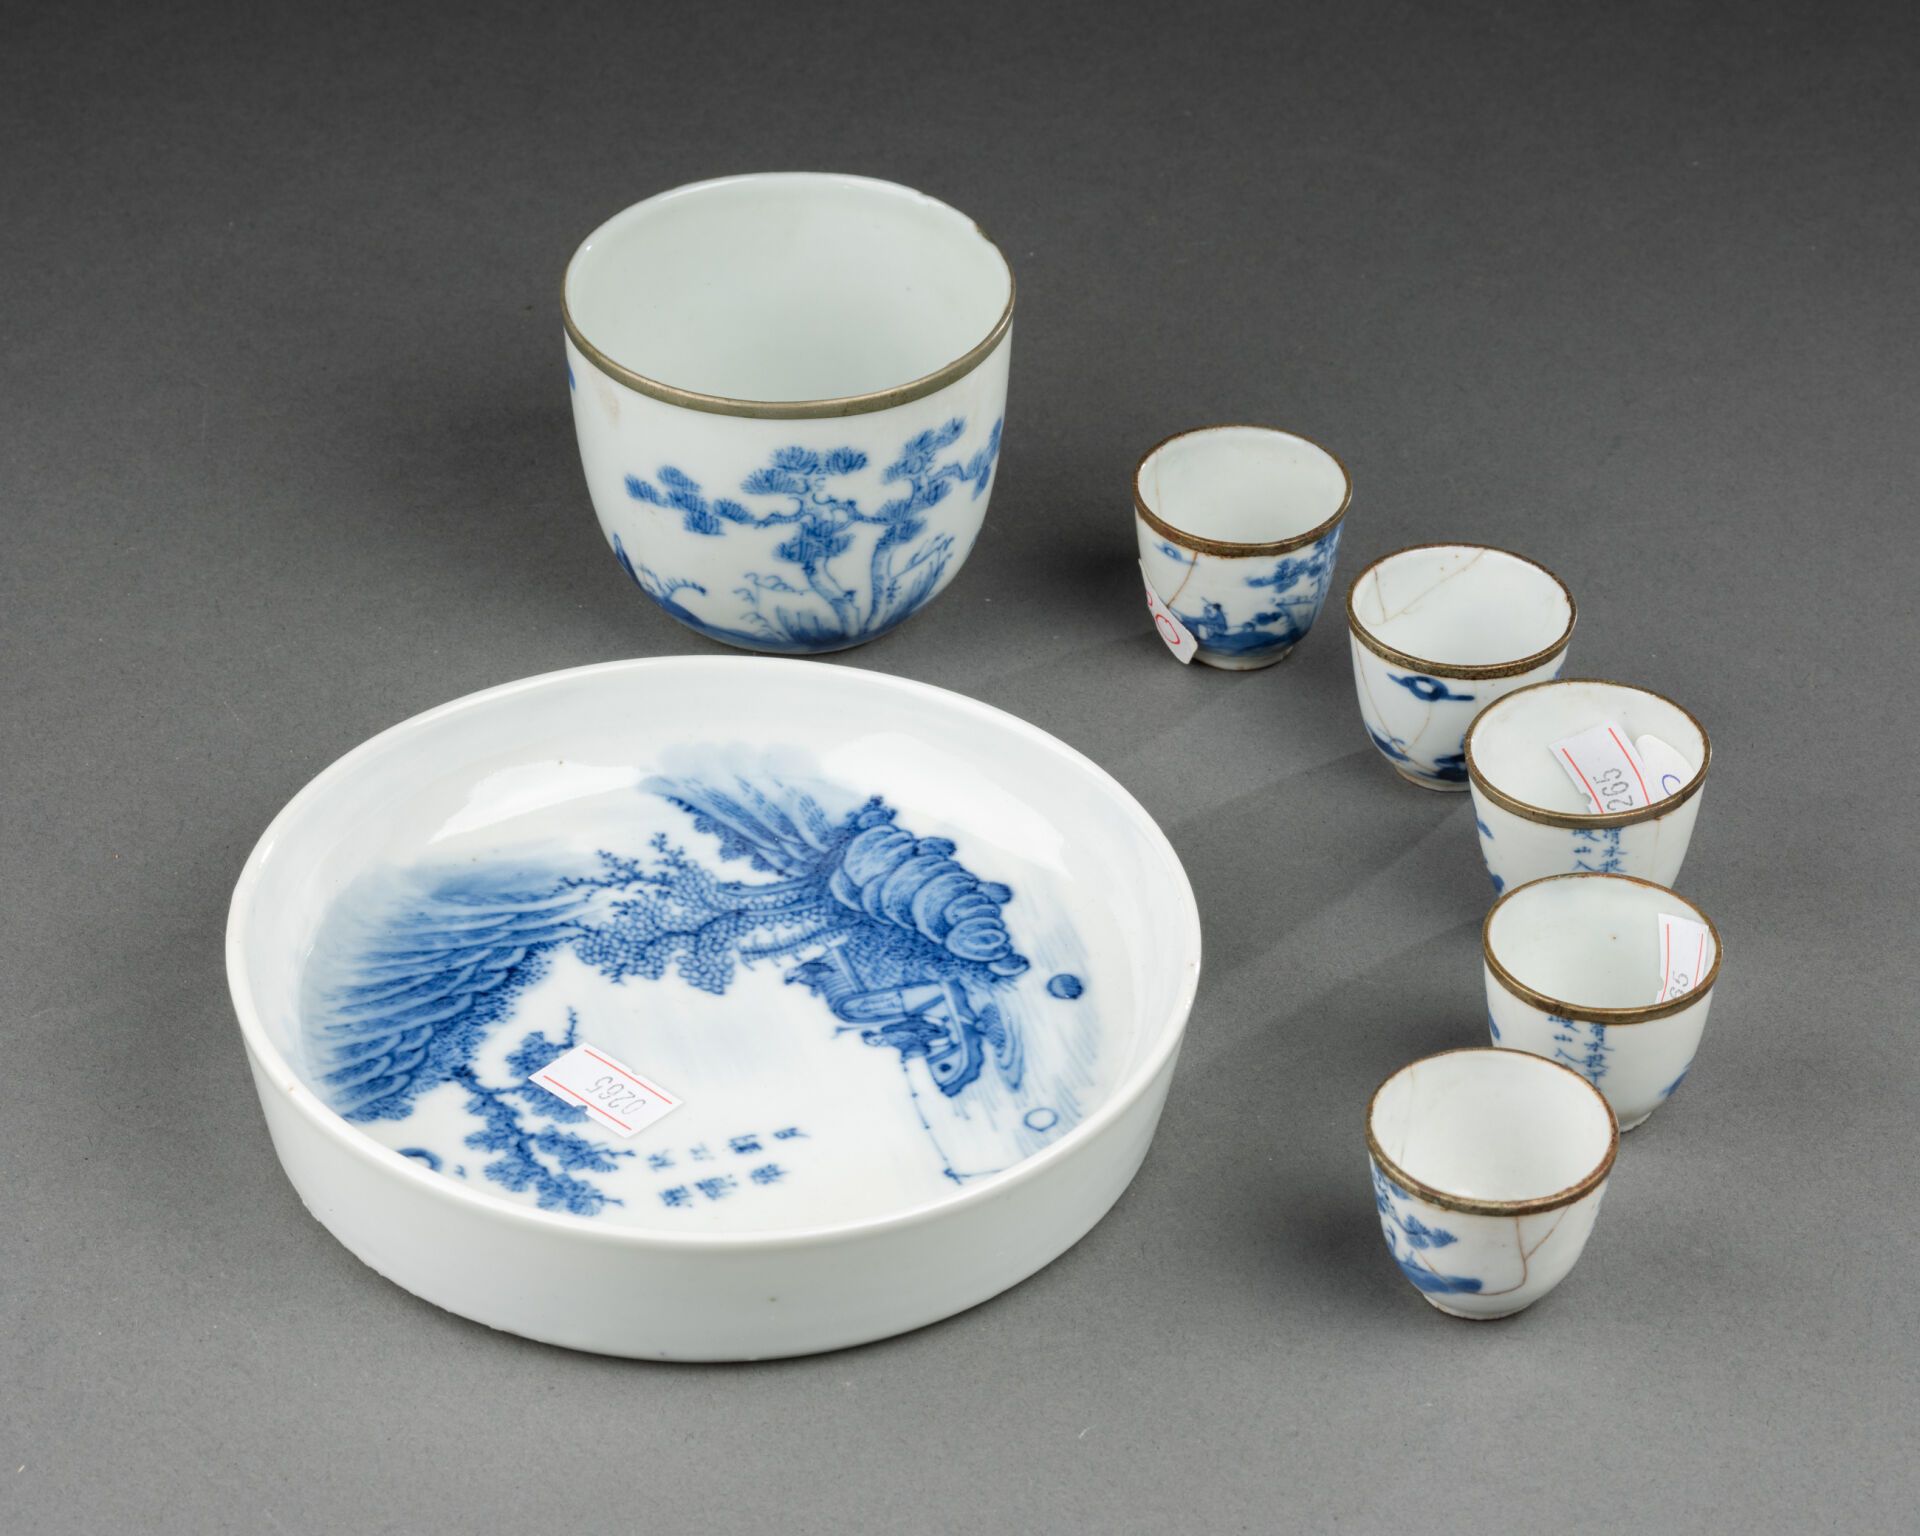 CHINE pour le VIETNAM - XIXème siècle 茶具，包括一个杯子、五个小碗和一个大碗，碗上装饰有山水中的渔夫图案 
惠蓝 "瓷器，&hellip;